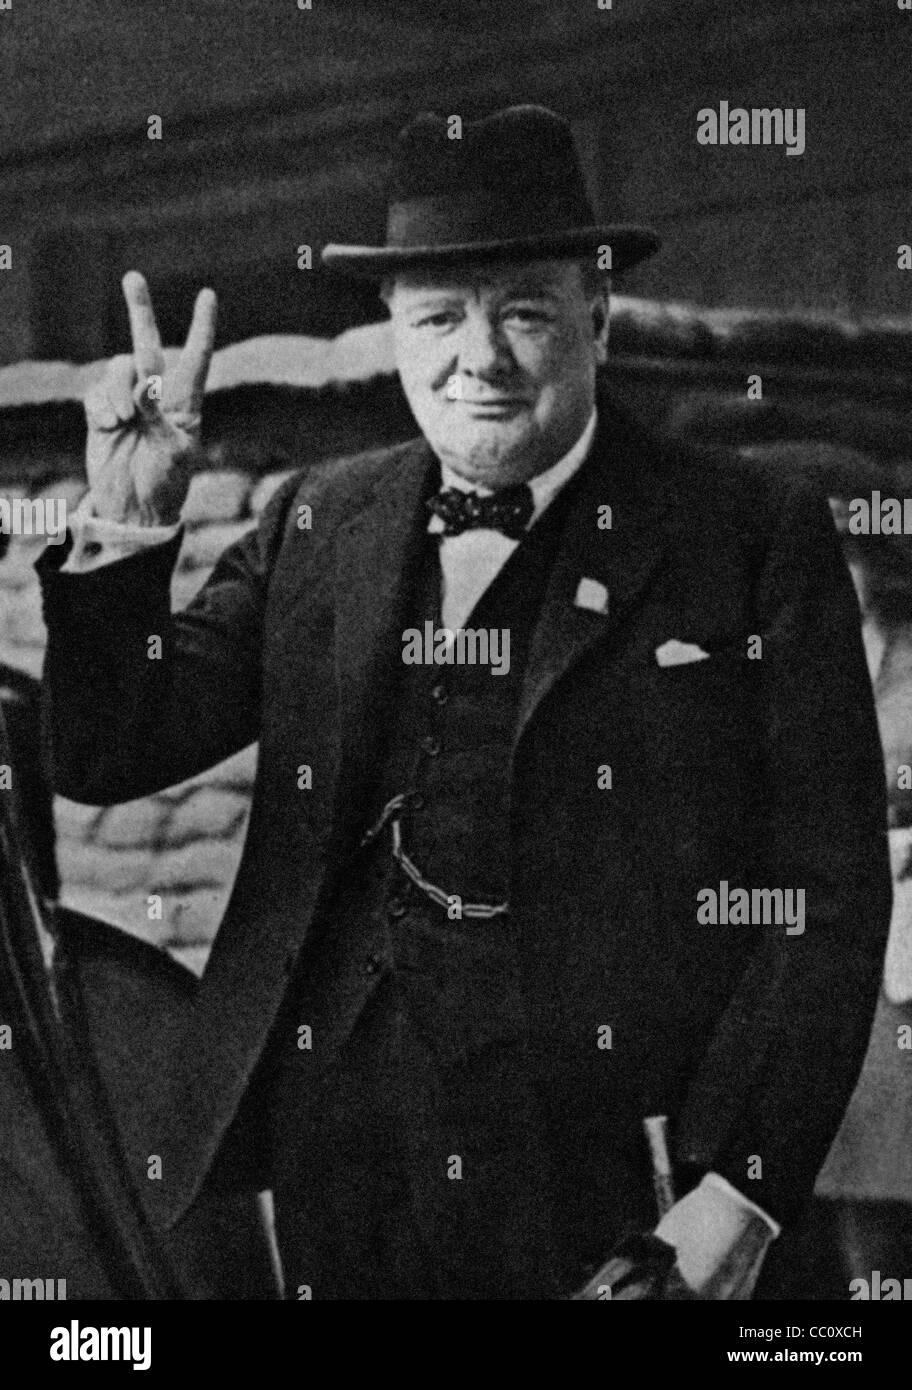 Britischen Führer Winston Churchill mit seiner berühmten V für Victory-Zeichen. Bild aus dem Archiv des Presse-Portrait-Service (ehemals Porträt Pressebüro) 1941 Bild Stockfoto